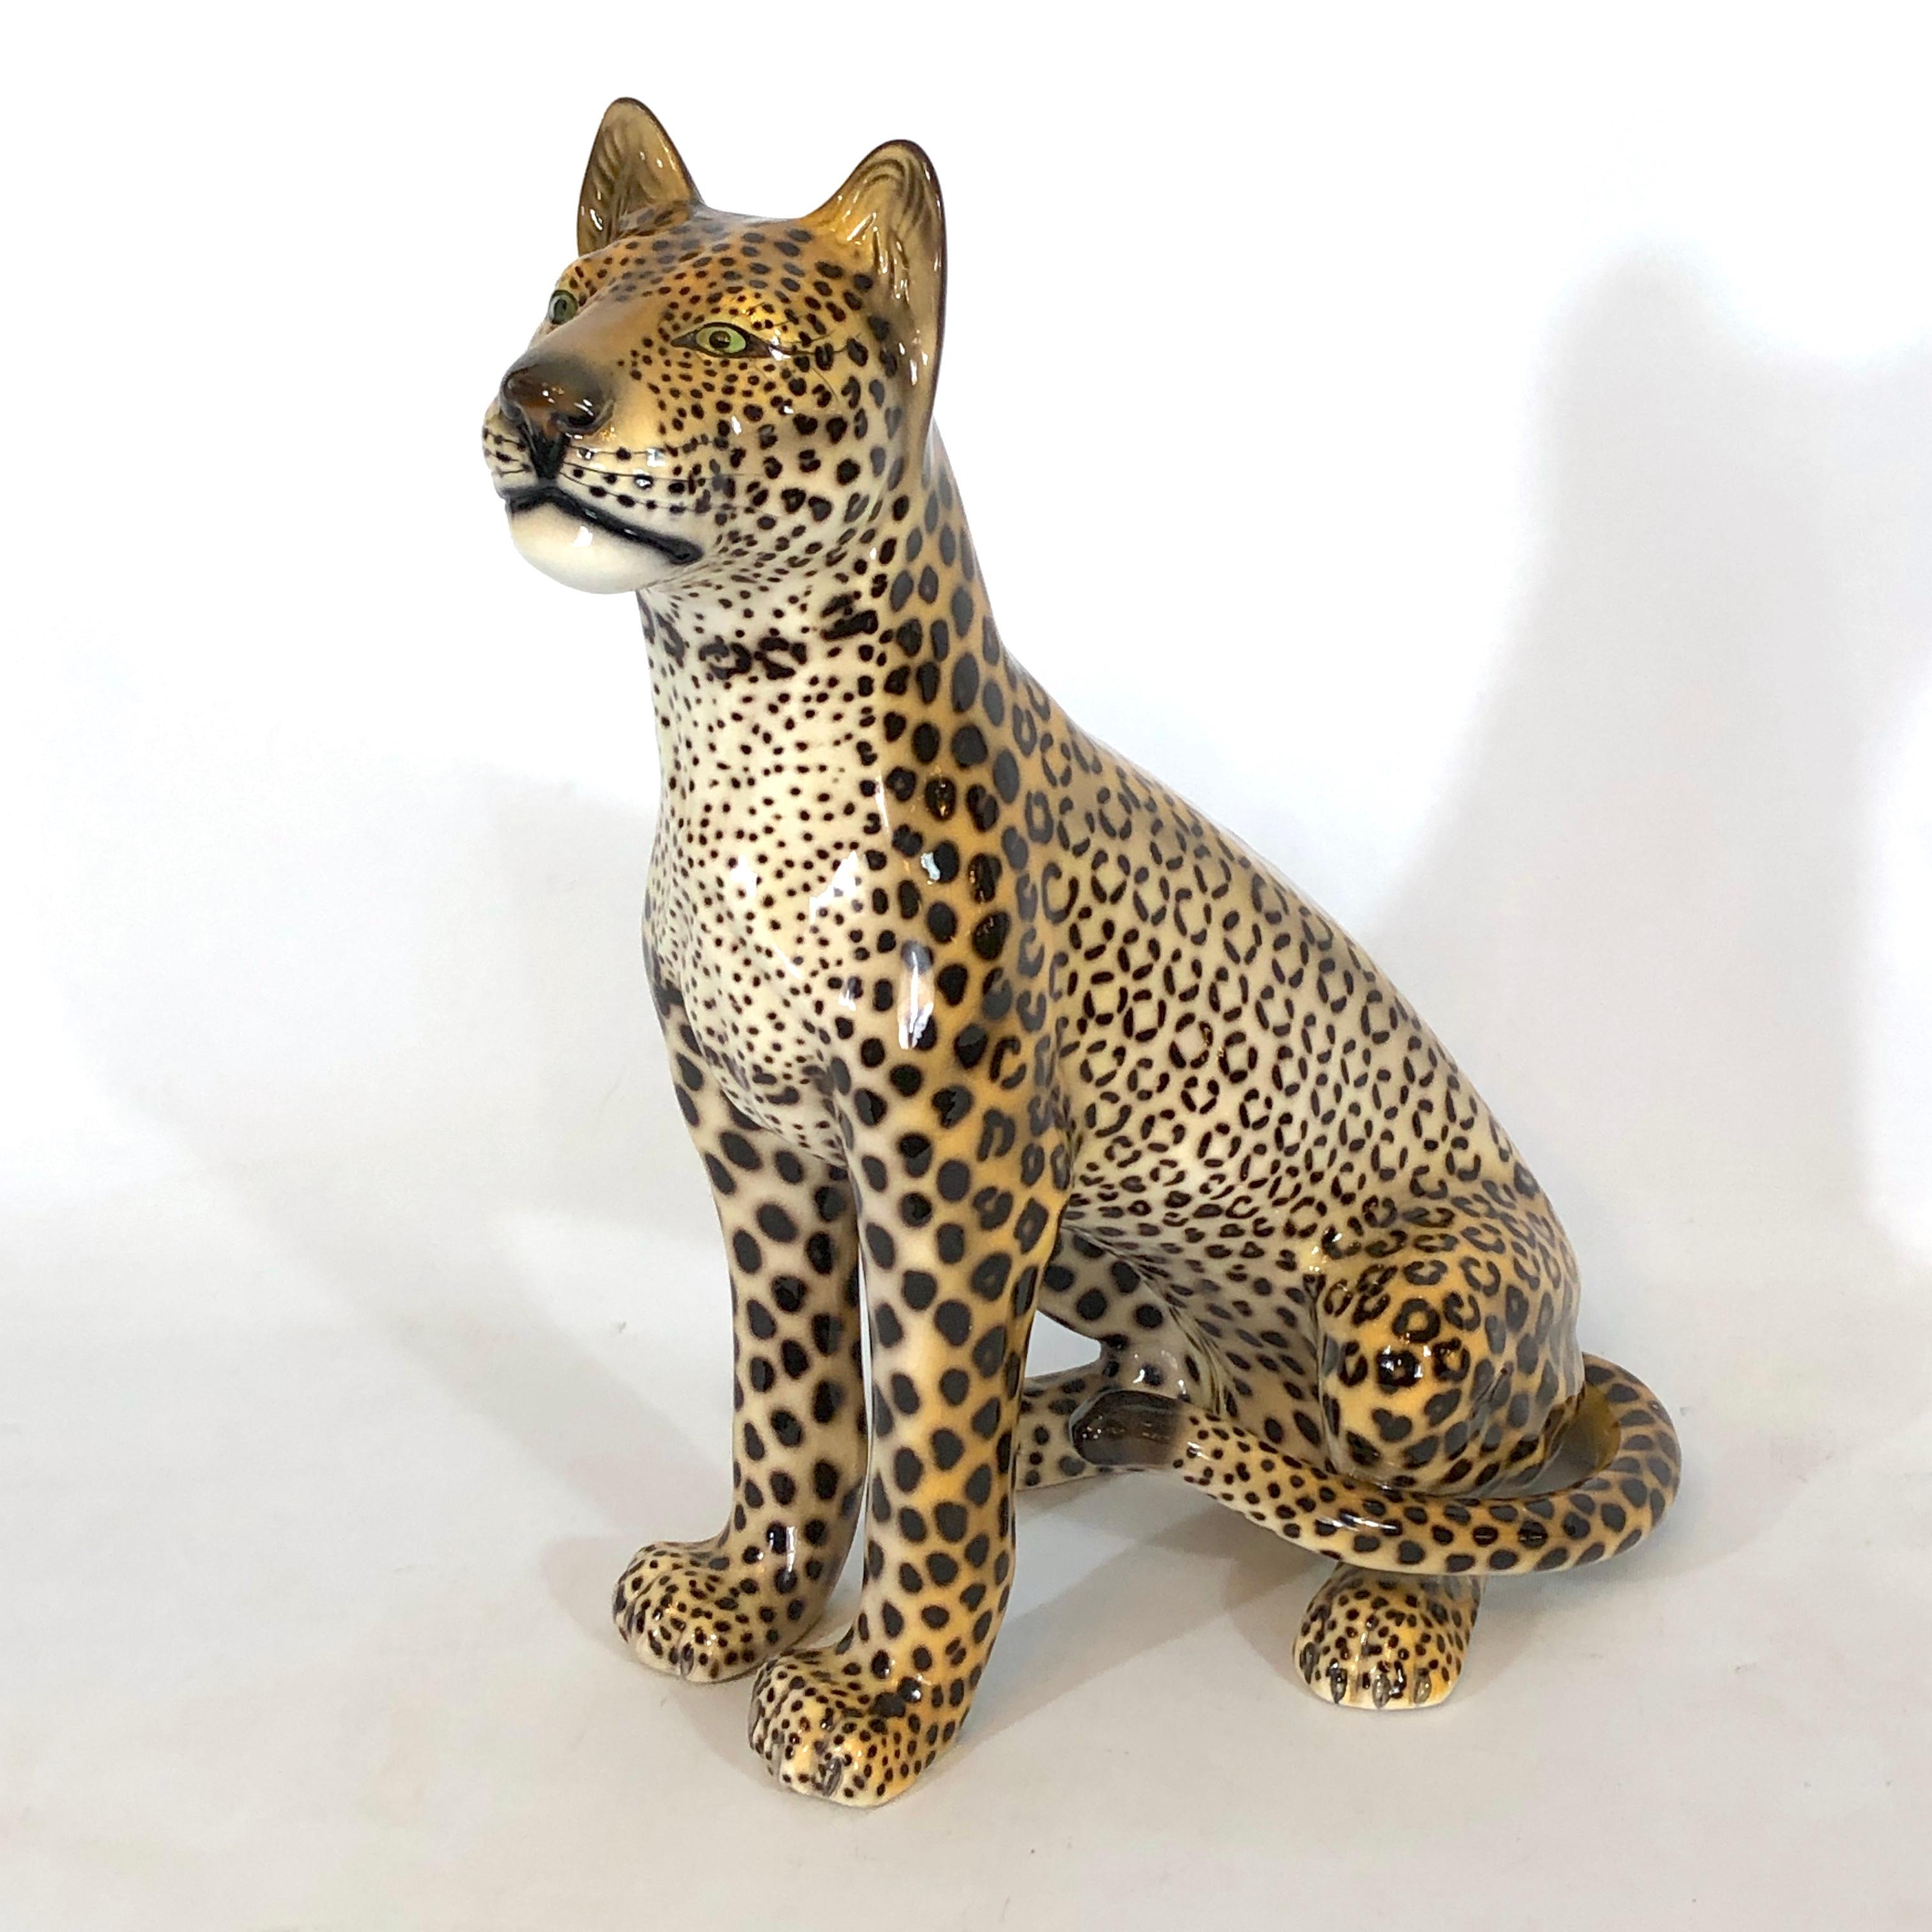 Großer italienischer Vintage-Keramik-Leopard aus den 60er Jahren. Unterzeichnet 11